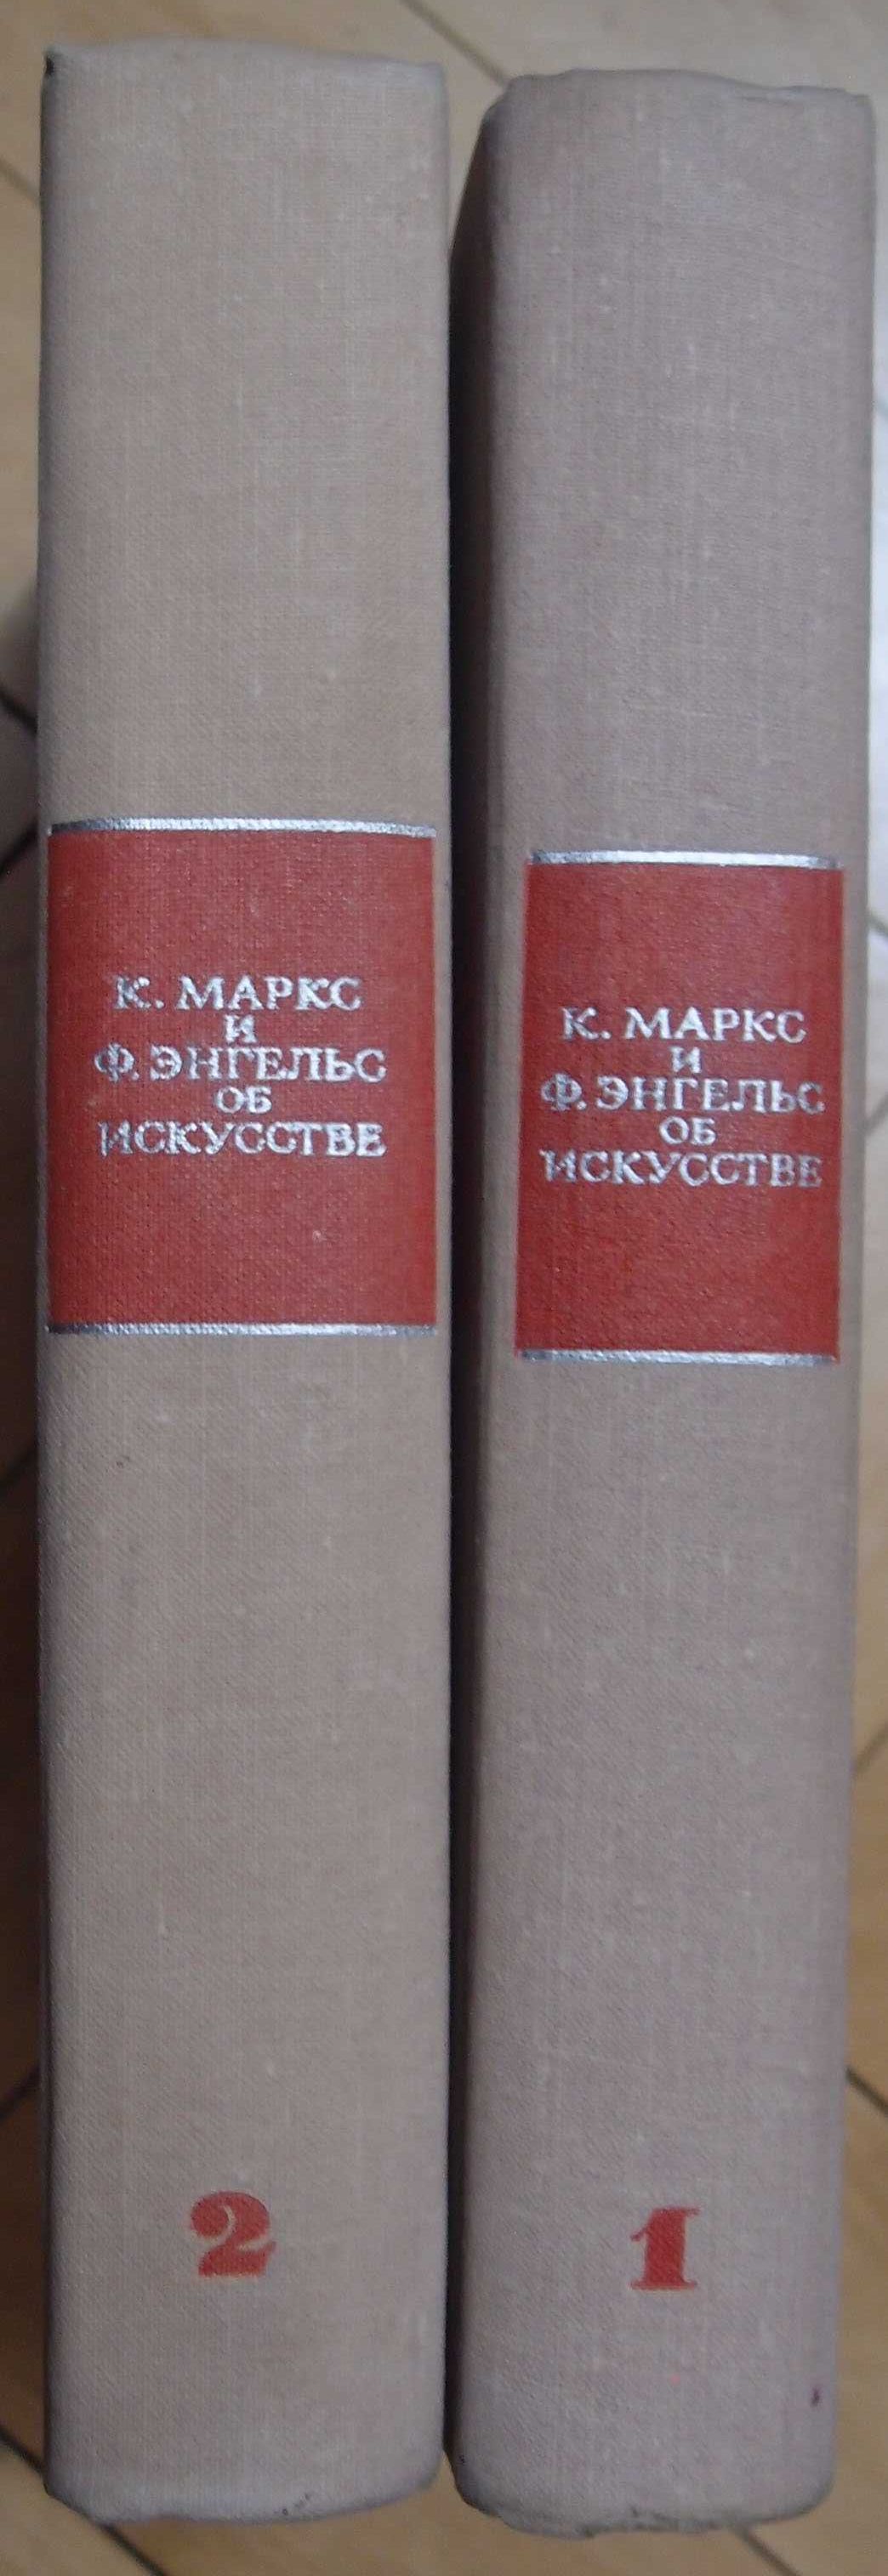 Книга Карл Маркс и Ф. Энгельс об искусстве (1967г.)